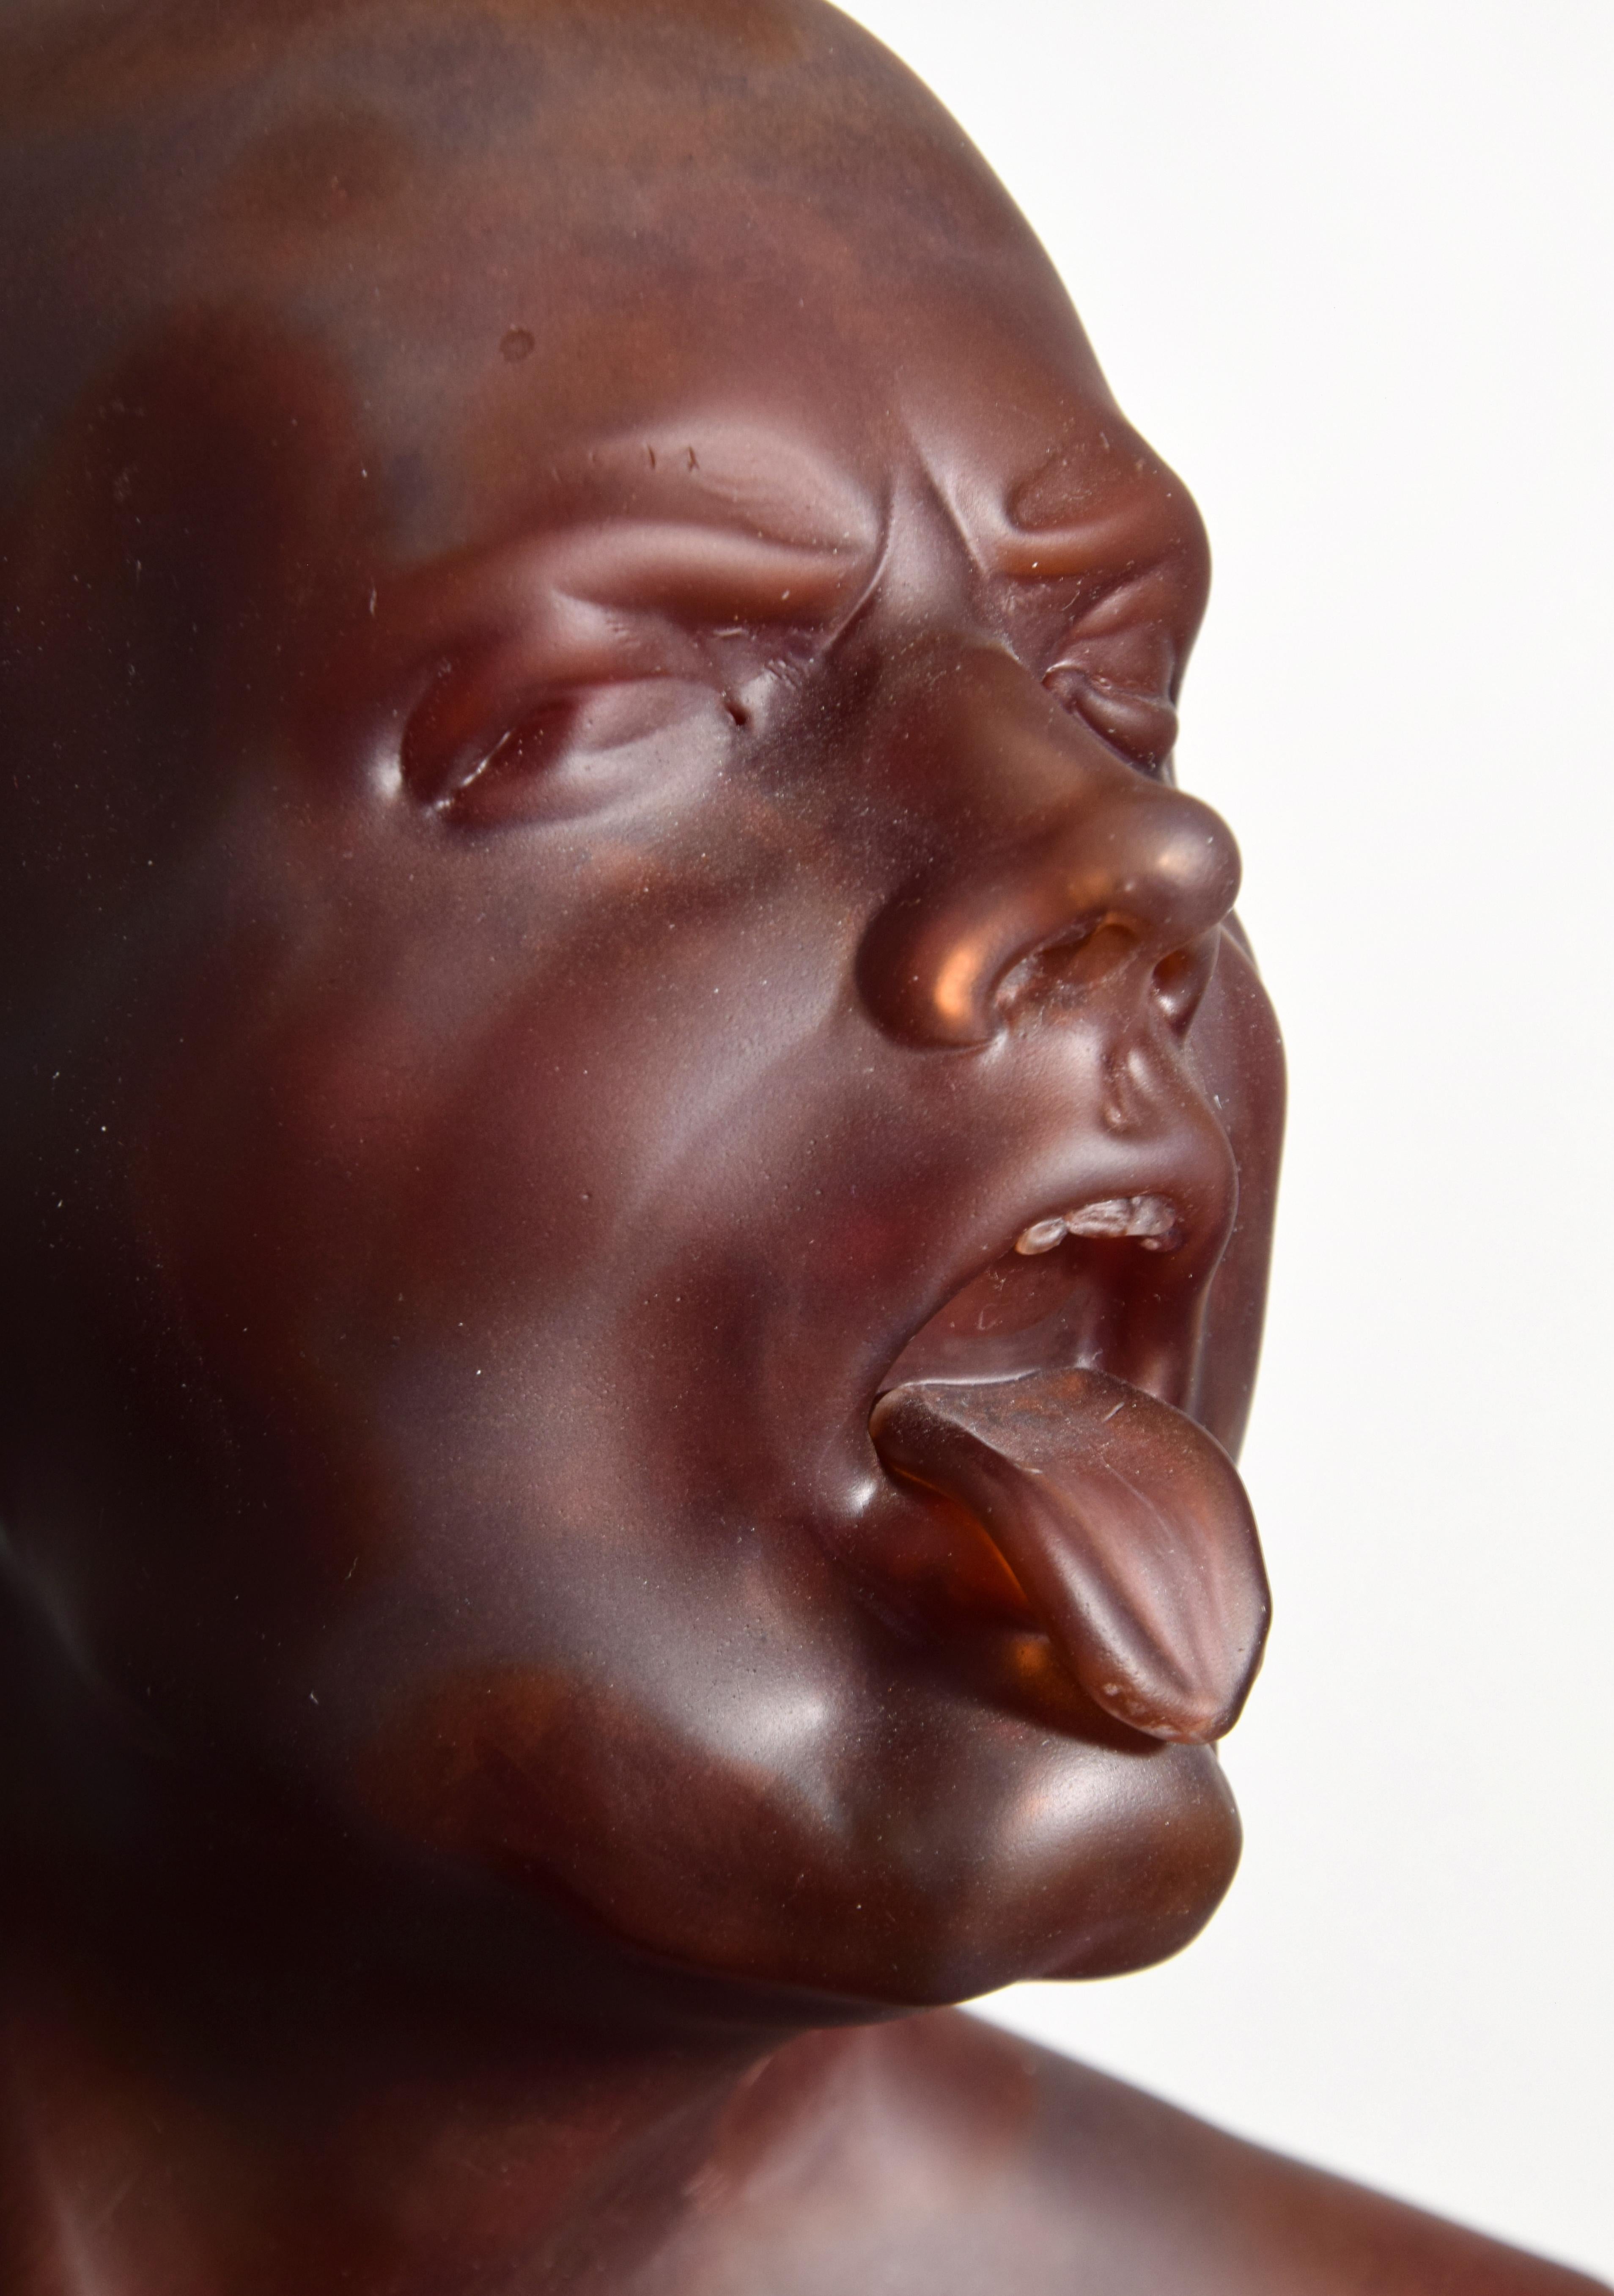 Ross Richmond Glass “Portrait” Bust / Sculpture For Sale 5